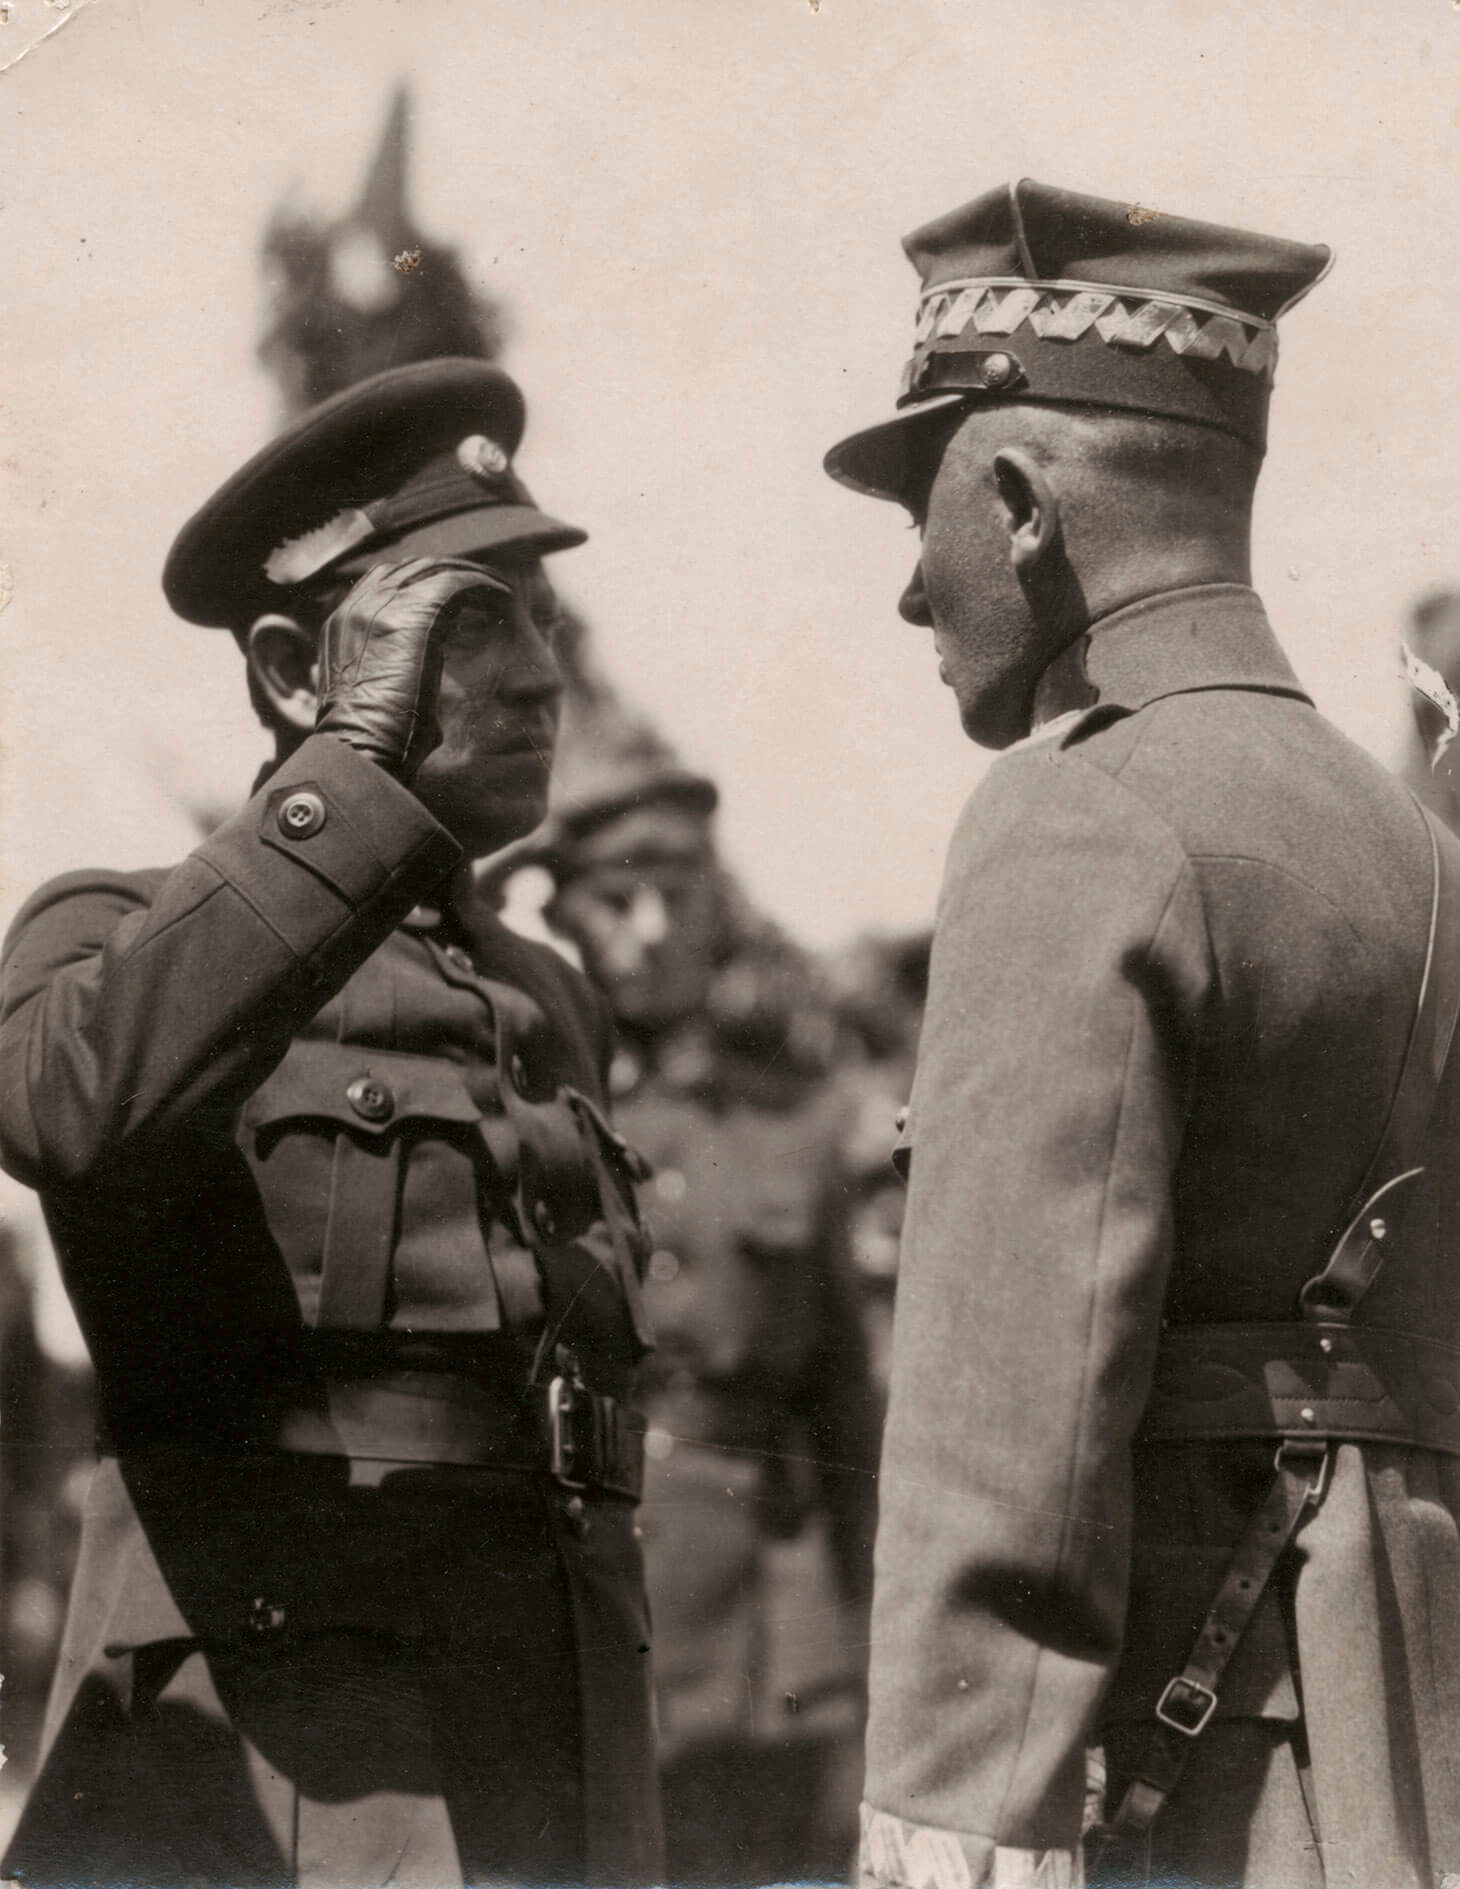 Czarno-biała fotografia przedstawiająca atamana Symona Petlurę salutującego generałowi Edwardowi Śmigłemu-Rydzowi. Sylwetki obu żołnierzy, w ujęciu półpełnym , od pasa w górę, wypełniają cały kadr. Po lewej, w ciemnym mundurze znajduje się ataman Symon Petlura, a po prawej  generał Edward Śmigły-Rydz, odwrócony lewym ramieniem do widza. widzianemu w takim ujęciu nieco od tyłu. W tle, nieostry zarys trzeciego salutującego żołnierza. 